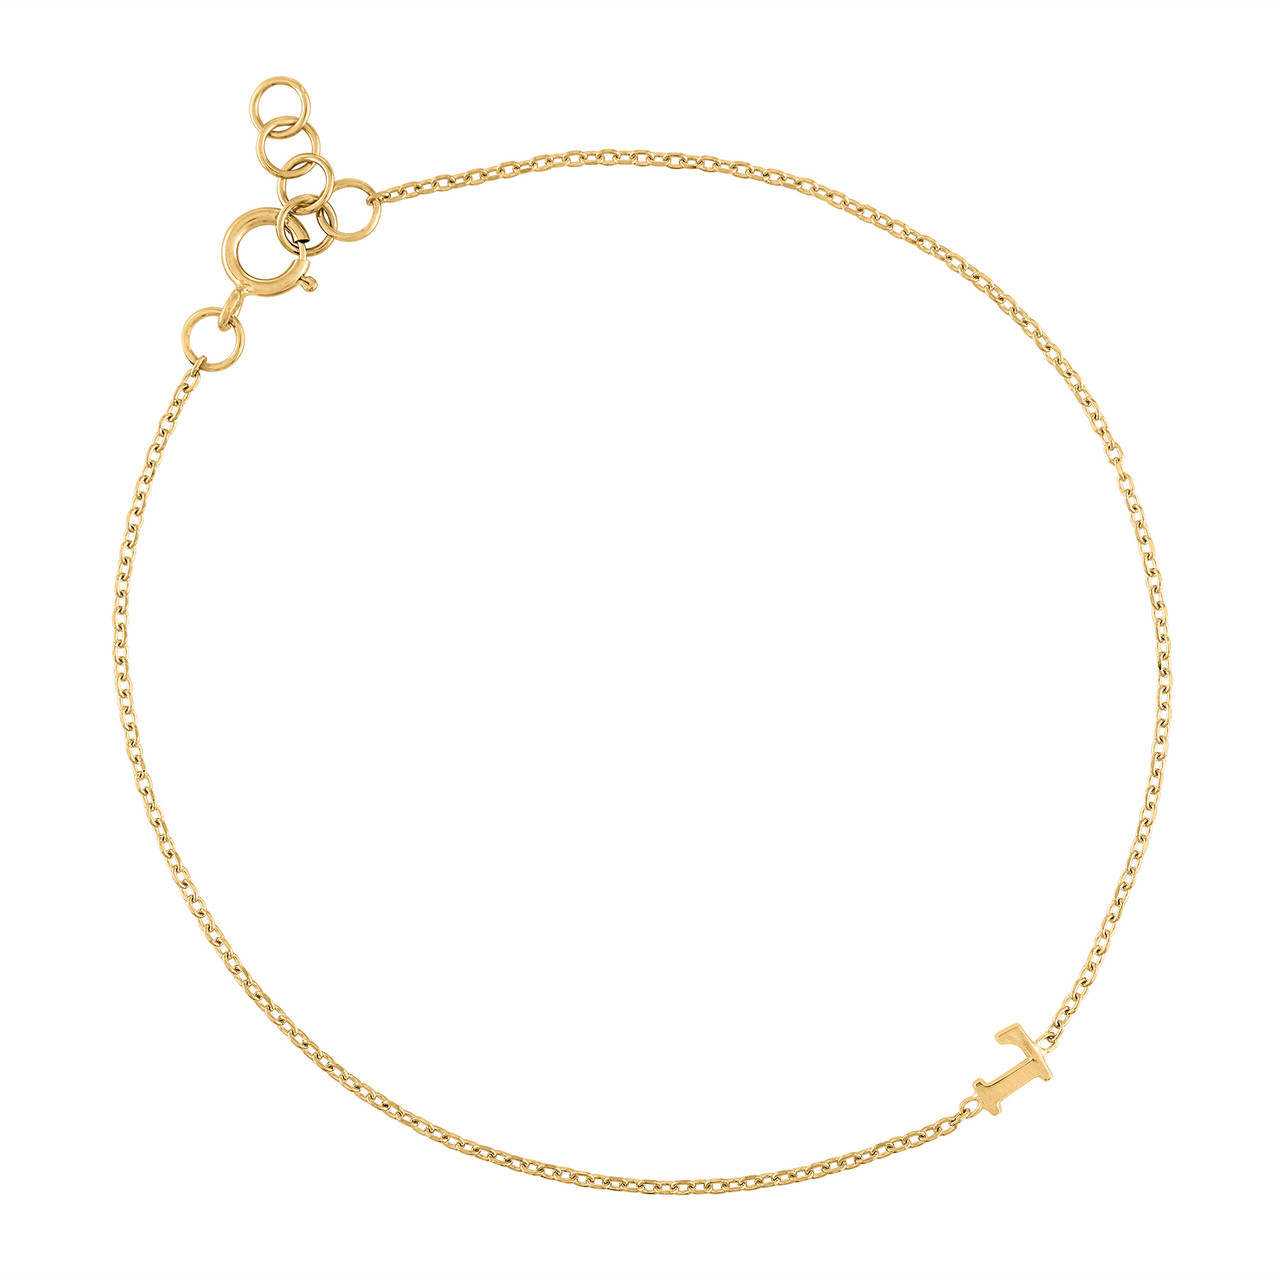 14K Gold Multi Block Letter Name Bracelet – Baby Gold